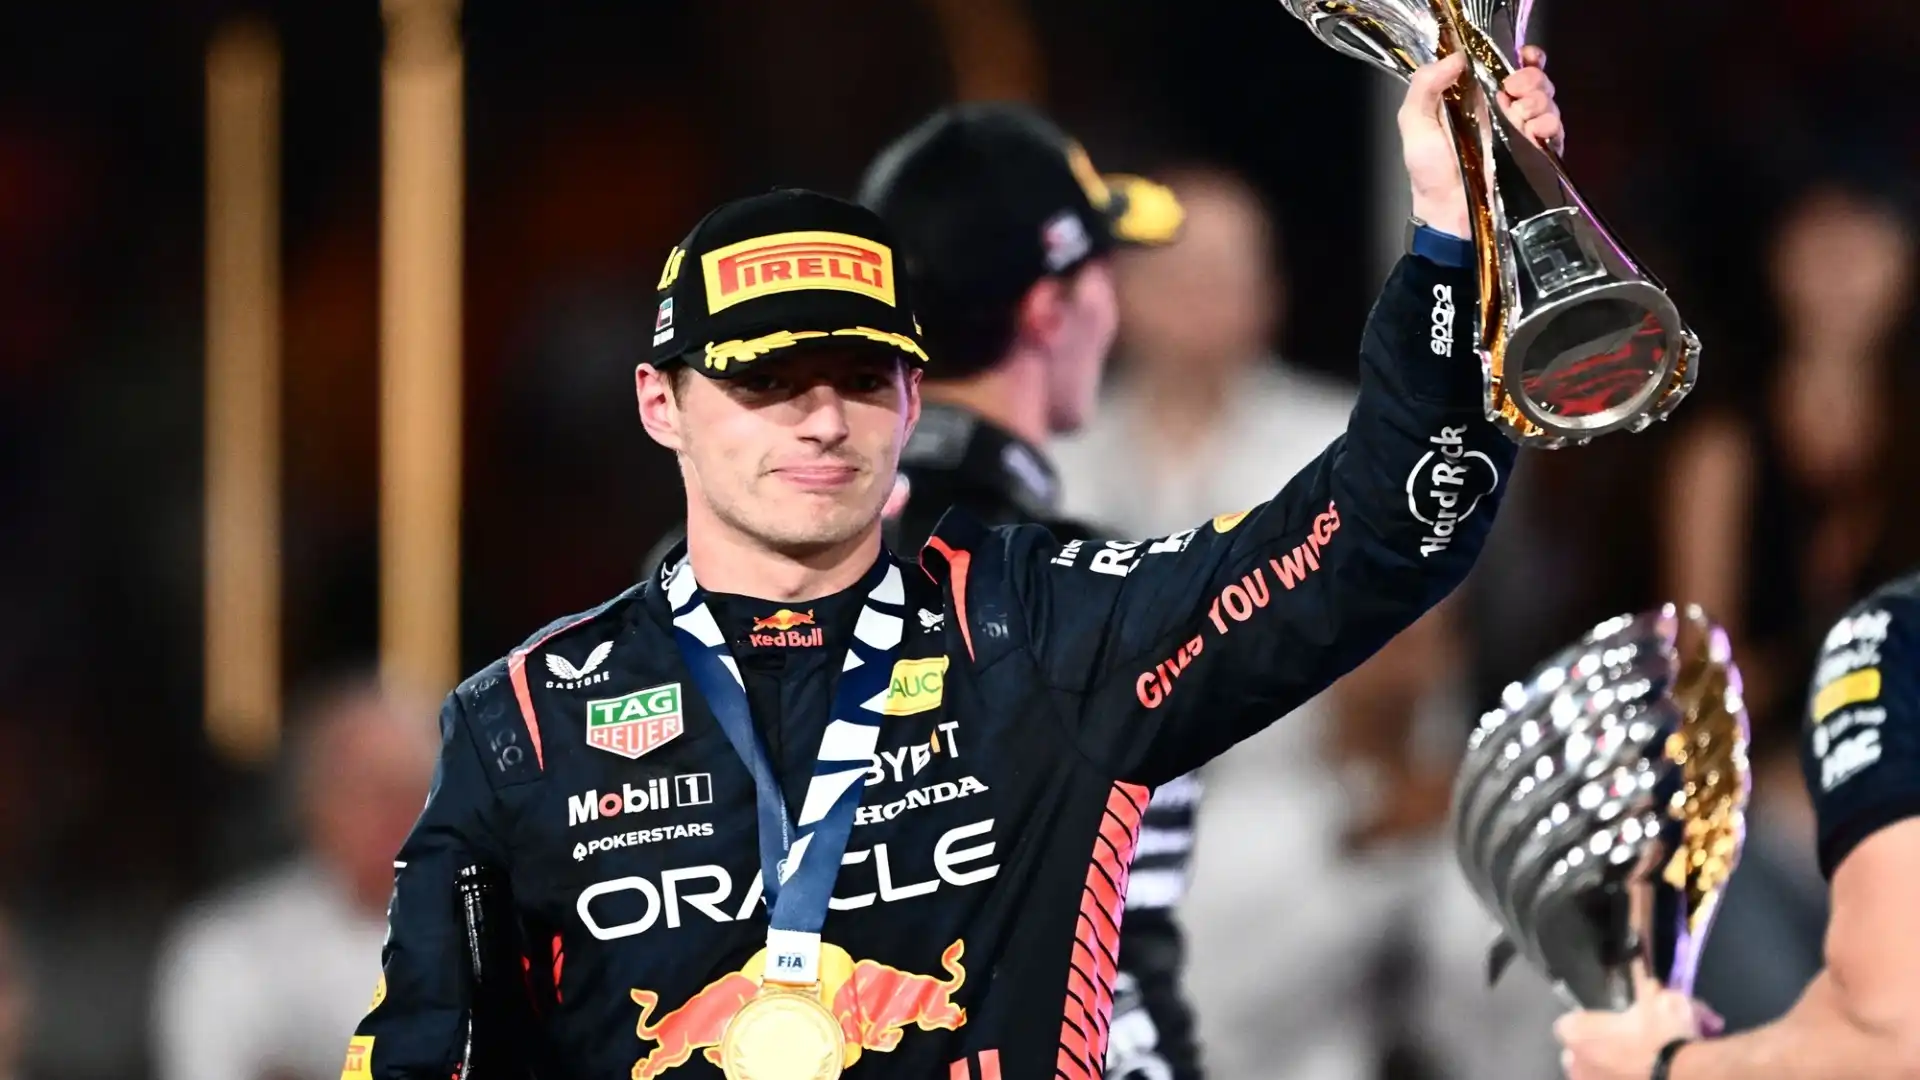 Dopo un campionato dominato, Verstappen si godrà un mese di riposo prima di tornare a sviluppare la nuova monoposto Red Bull a gennaio